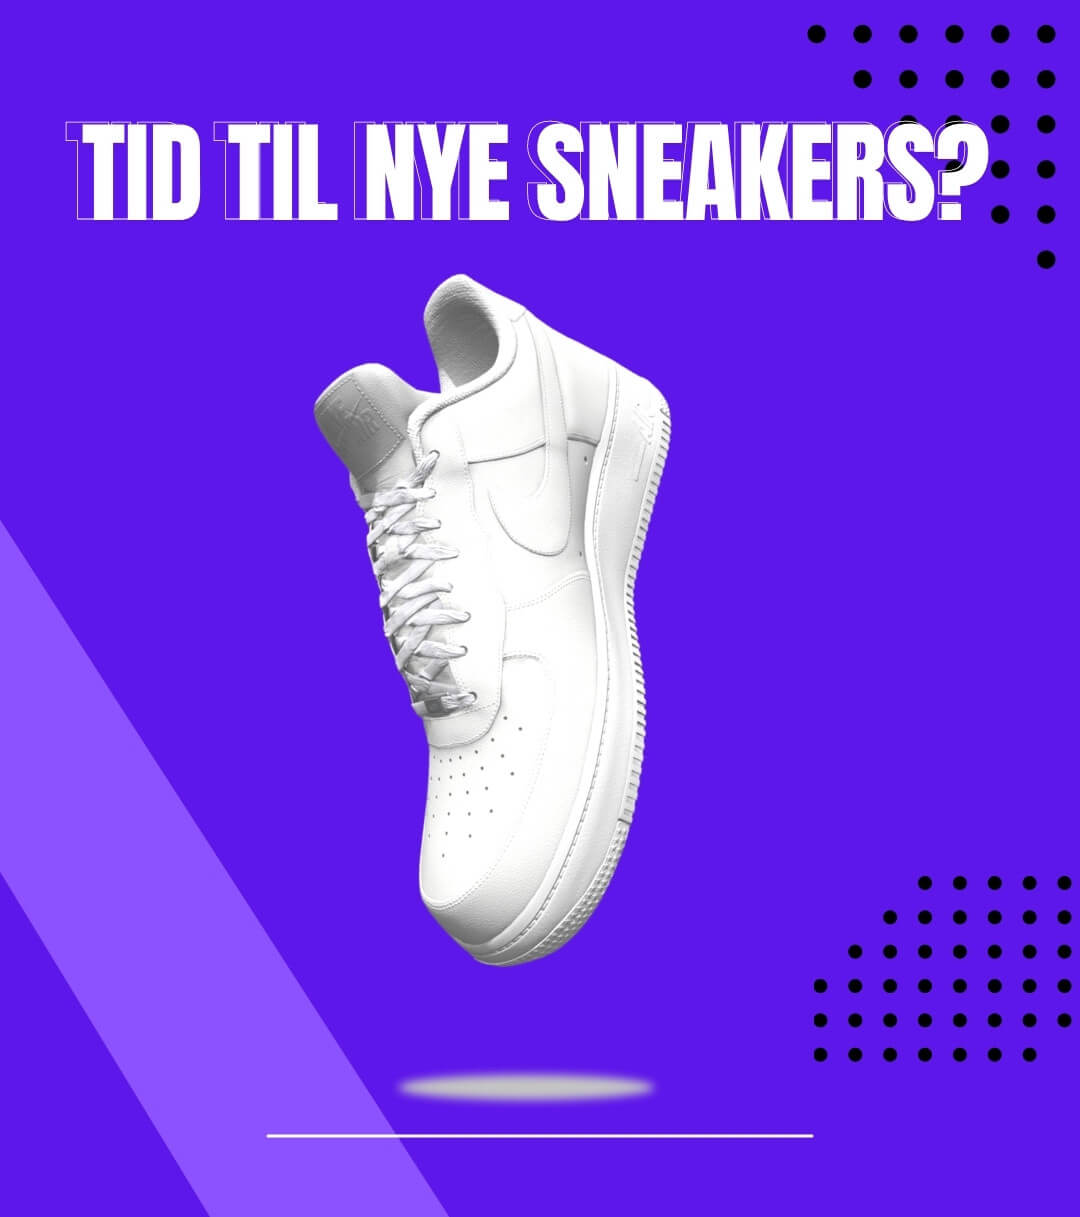 Er det ved at være tid til nye sneakers igen?